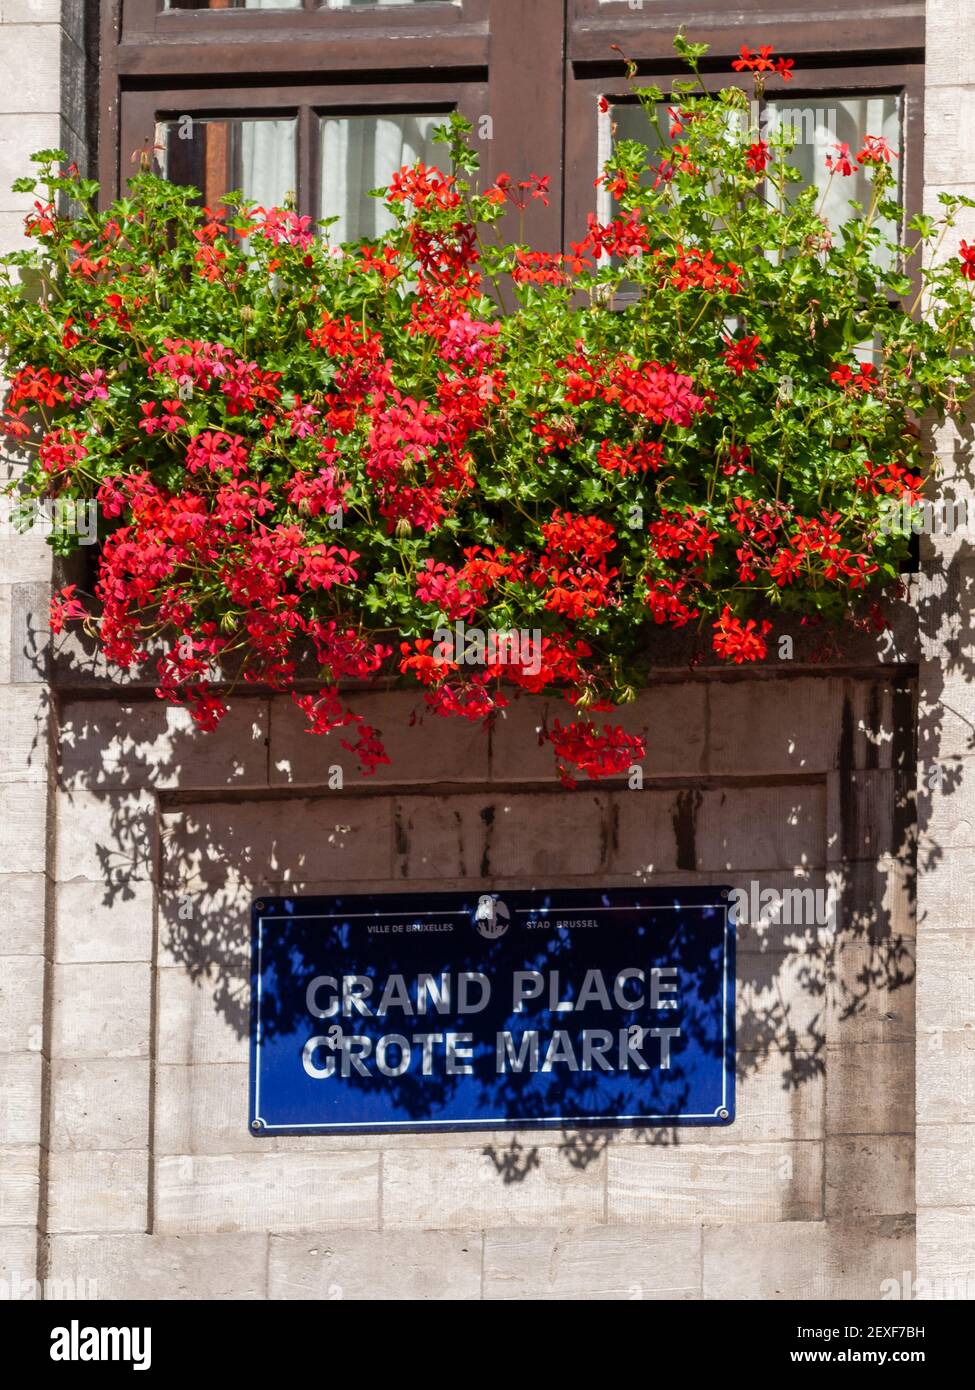 Bruxelles Gand collocare un cartello stradale su una parete sotto fiori rossi Foto Stock